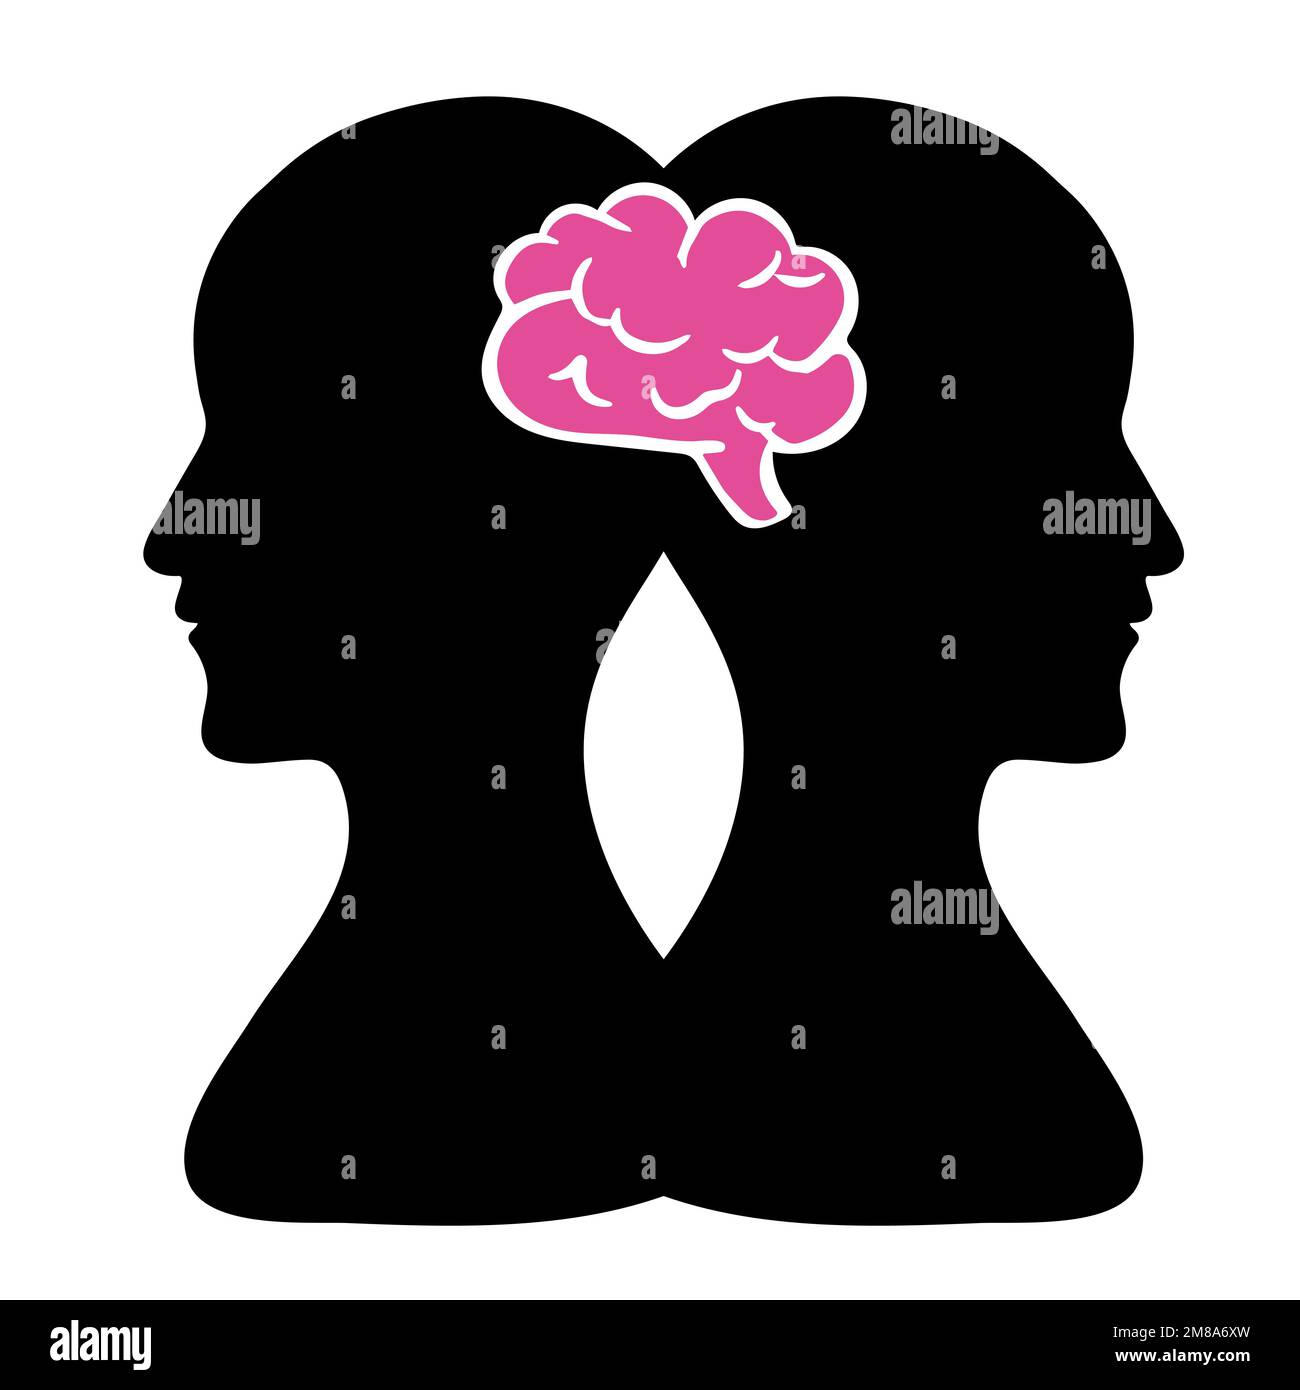 BPD concetto semplice. Icona minimalistica della testa umana con disturbo bipolare o disturbo borderline della personalità. Dualismo emozionale e personalità divisa Illustrazione Vettoriale